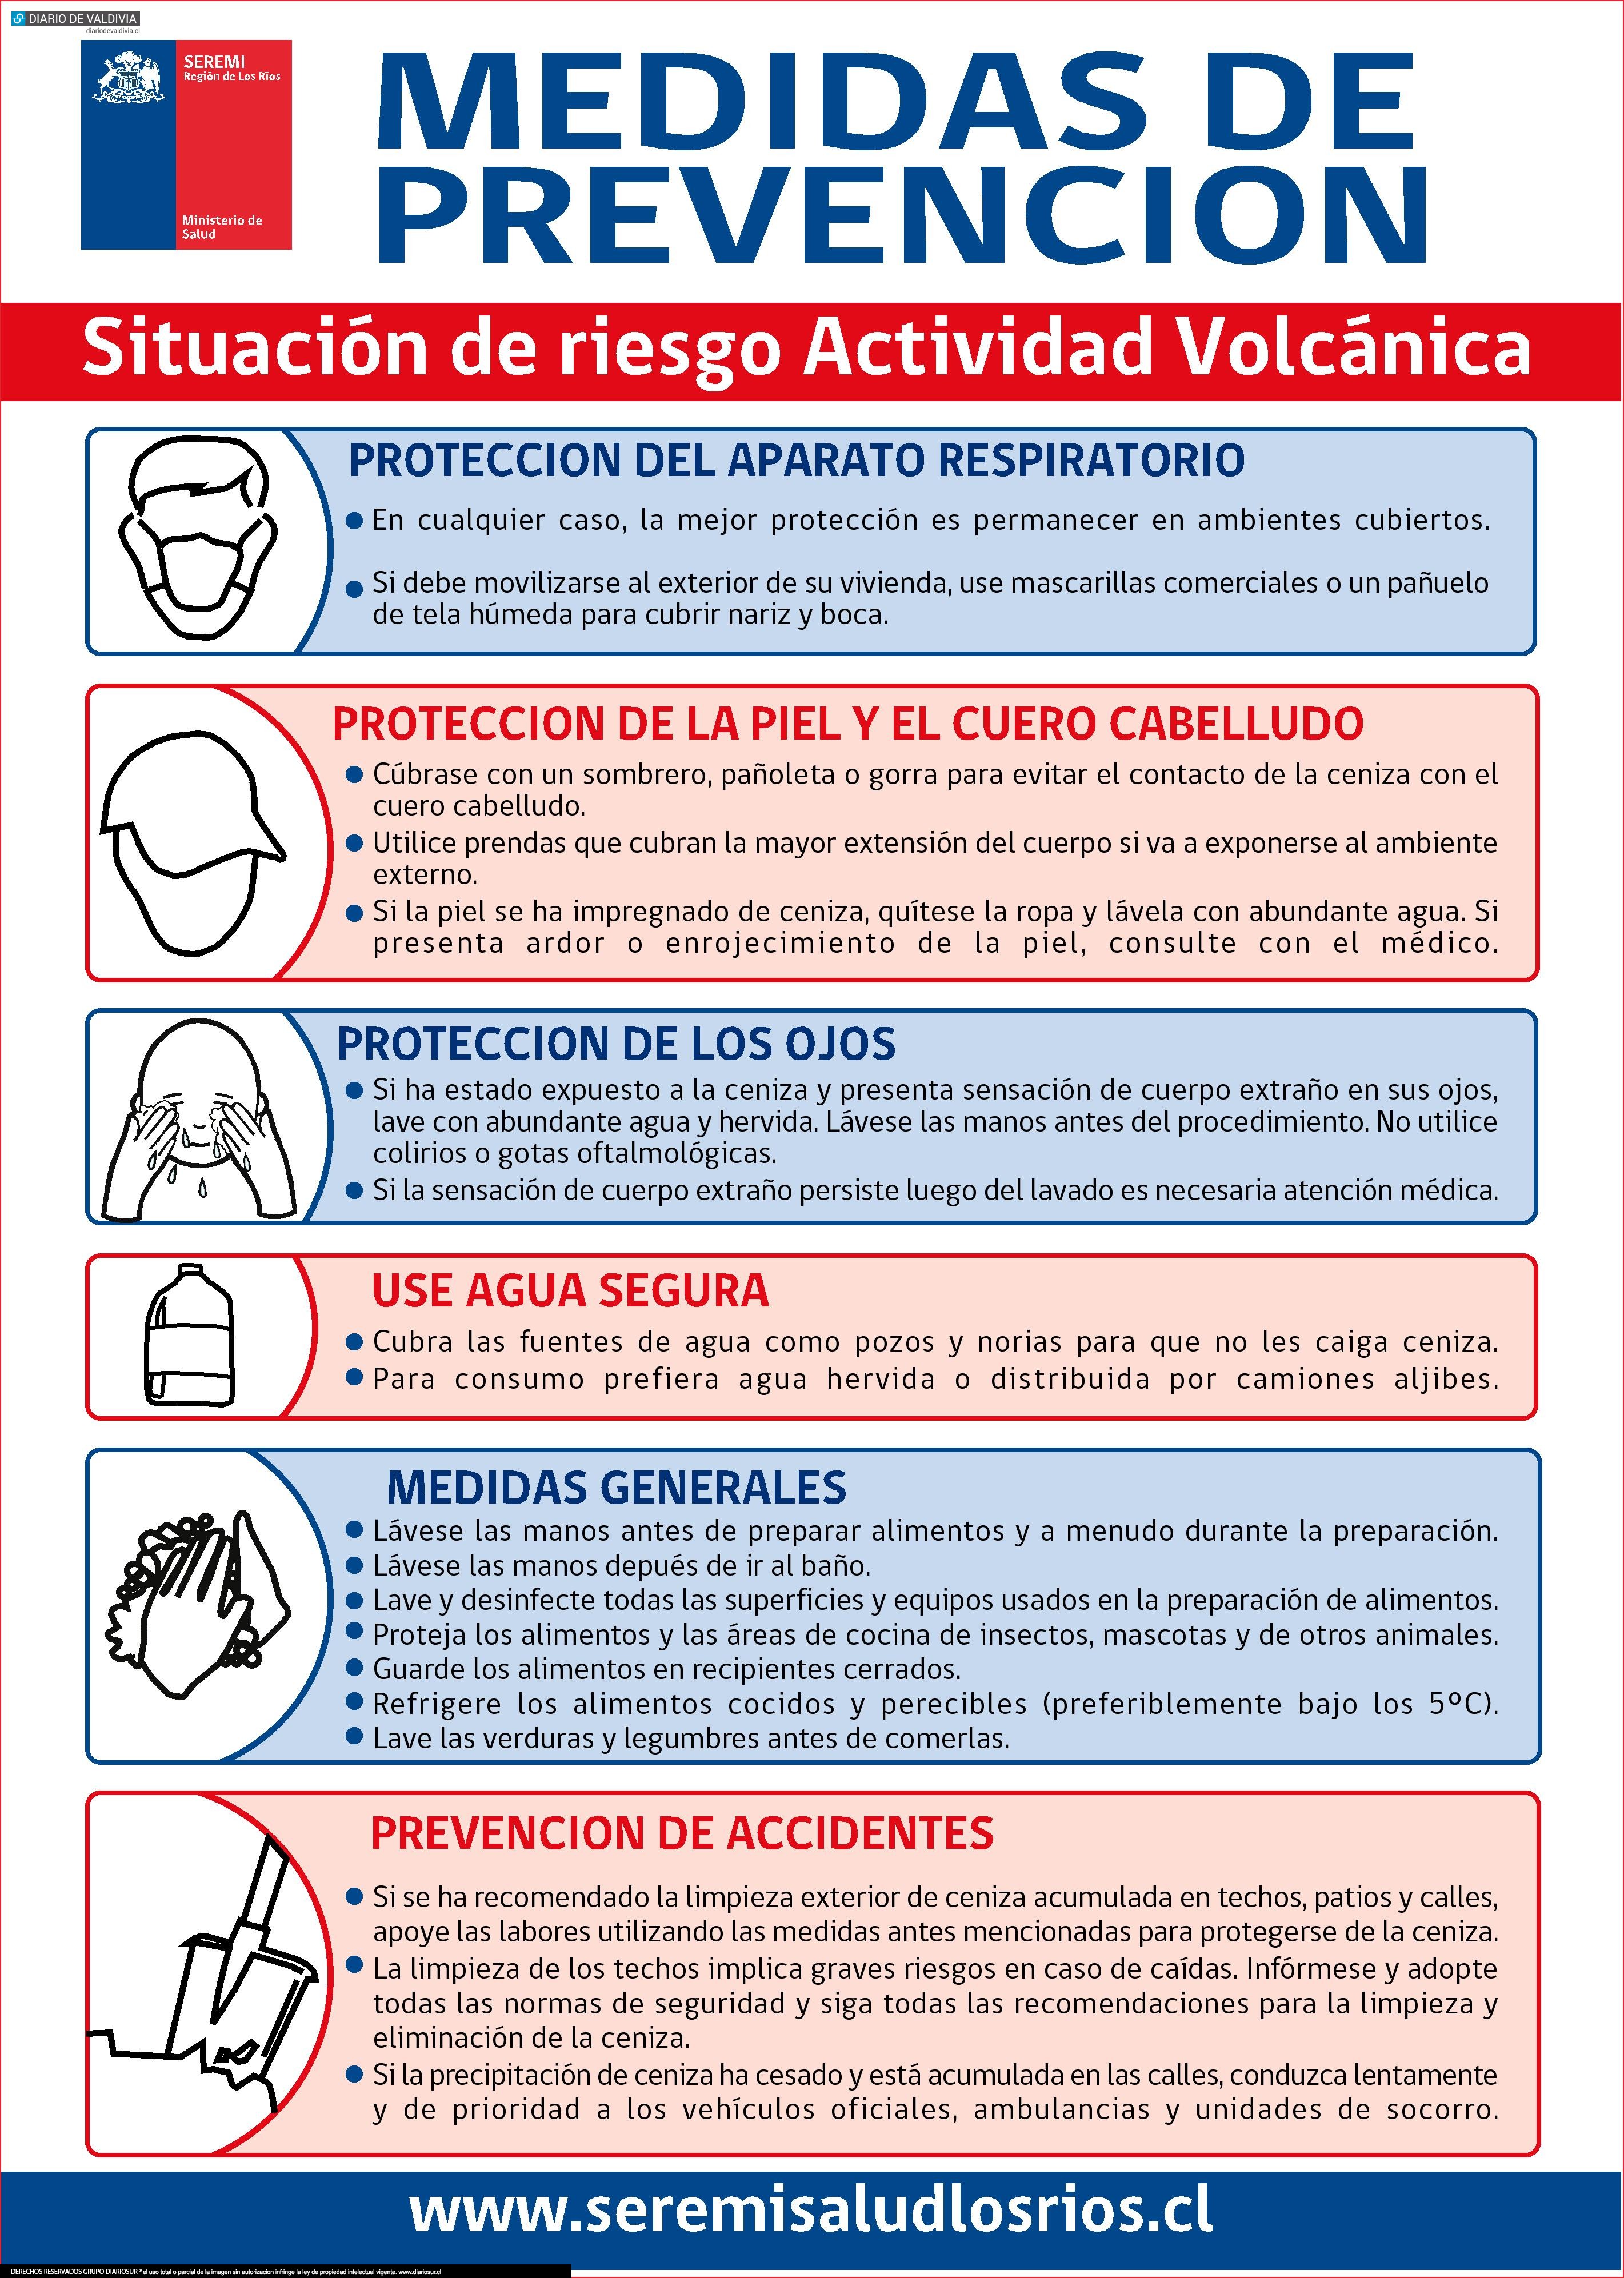 ¡Atento!: éstas son las medidas se seguridad recomendadas frente a caída de ceniza volcánica